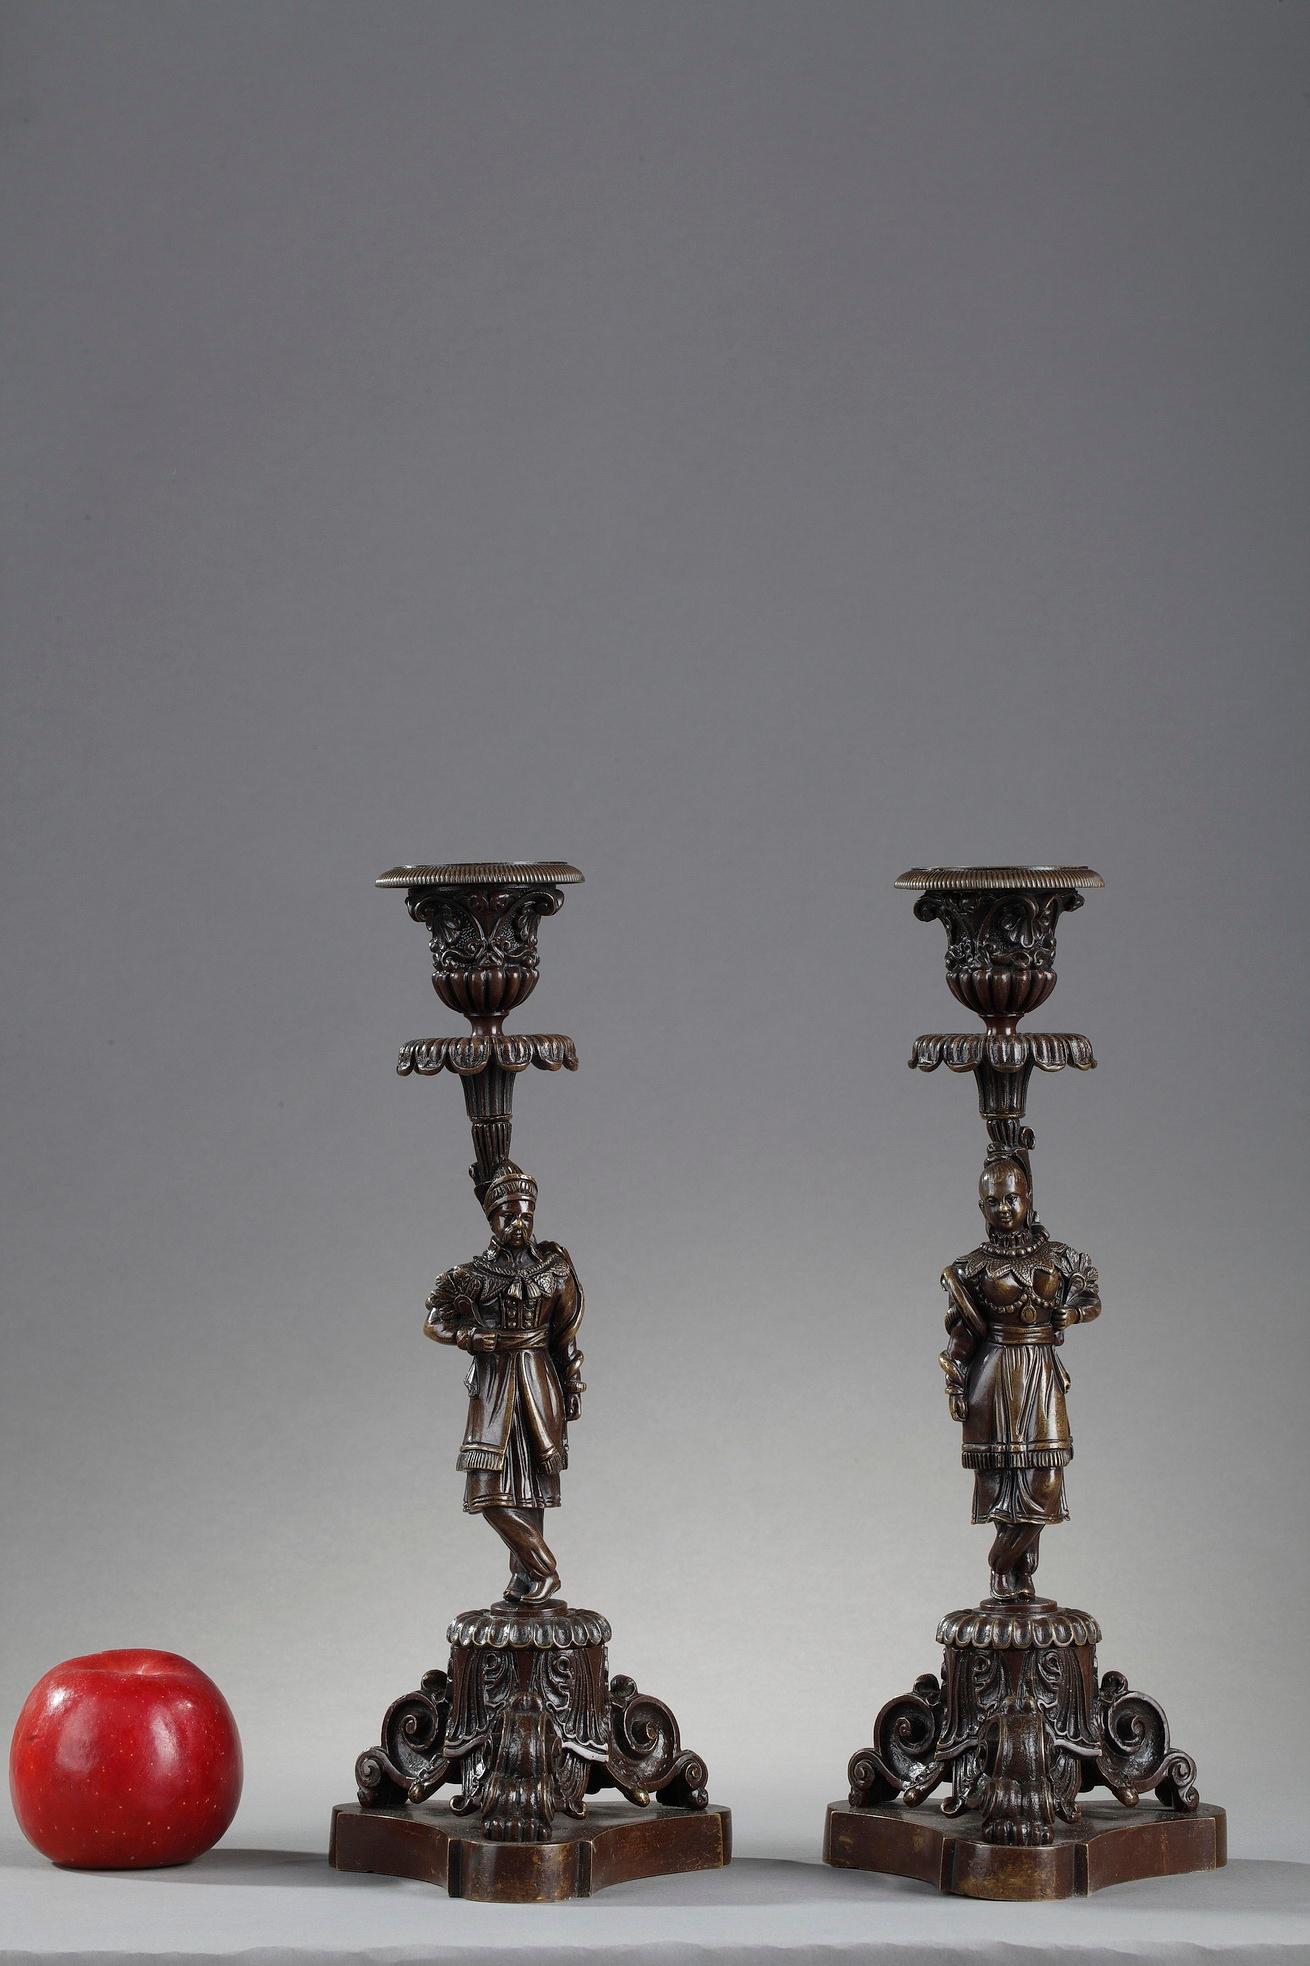 Bougeoirs de la fin du XIXe siècle en bronze patiné, la tige est décorée de motifs chinois. L'homme et la femme, élégamment habillés, reposent sur une base tripode. La base et la buse sont ornées de volutes et de feuillages finement